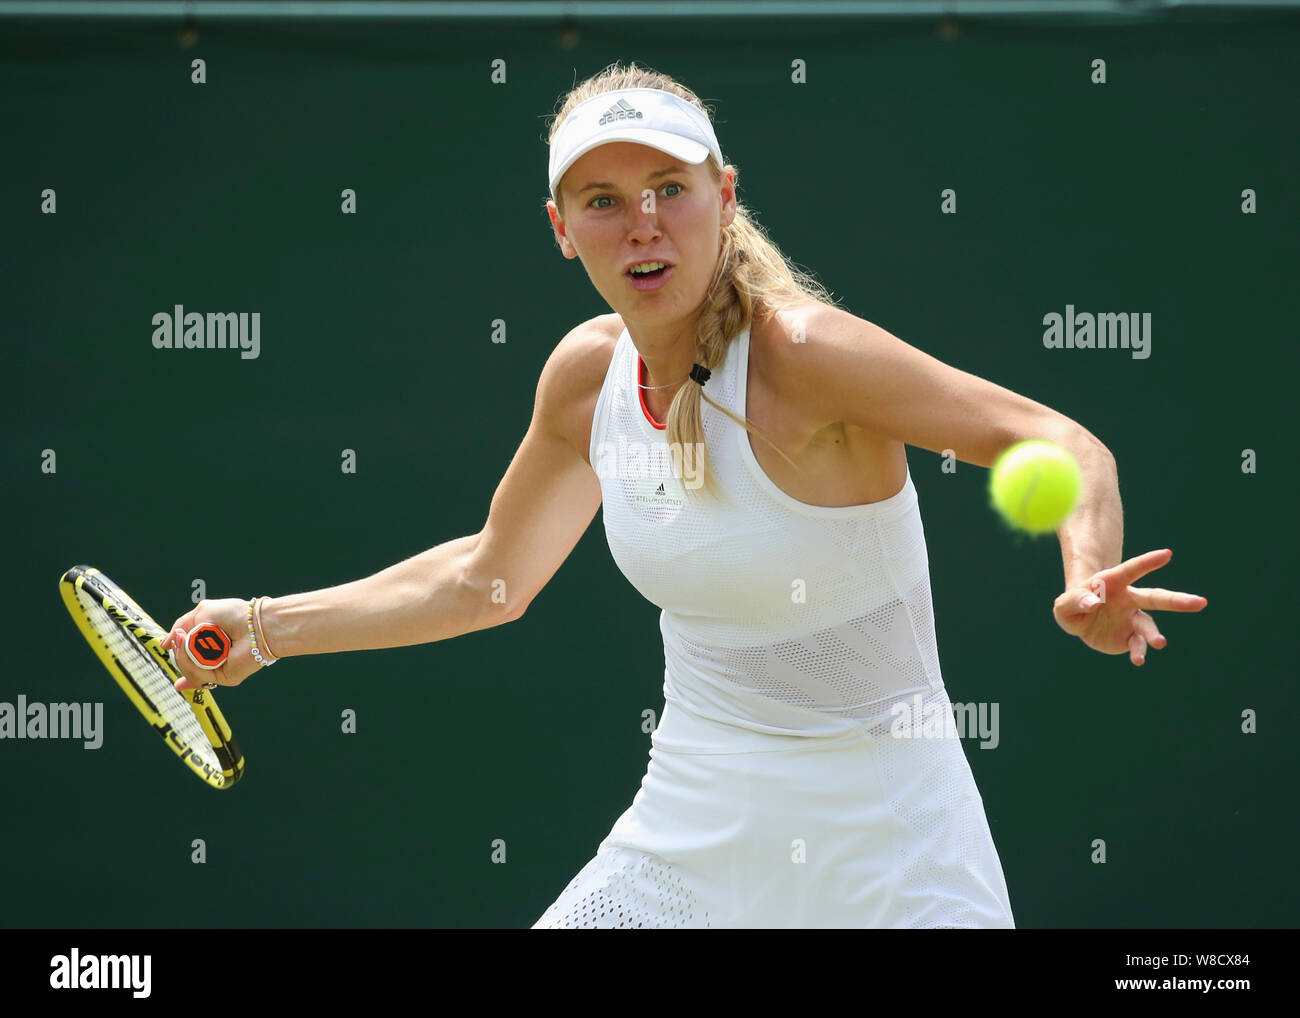 Danish tennis player Caroline Wozniacki playing forehand shot during ...